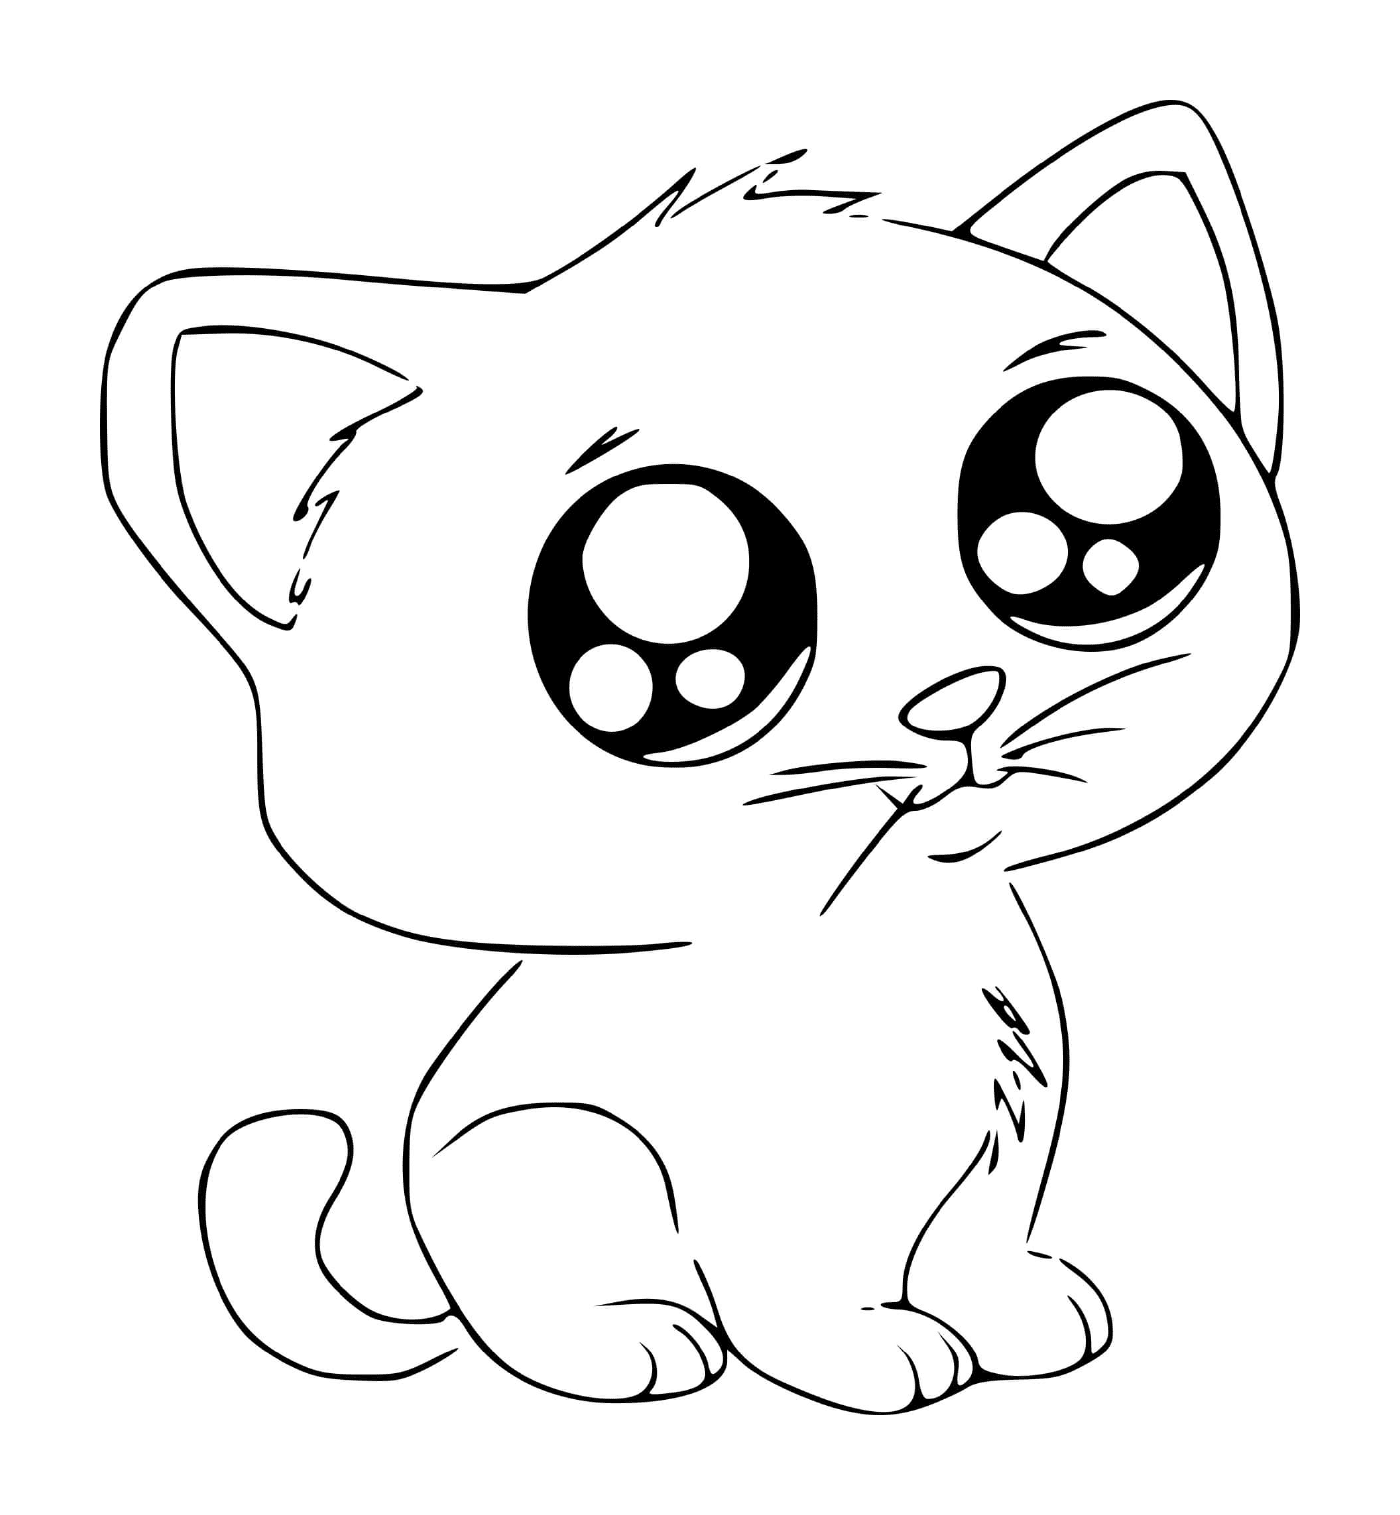  Um gatinho bonito estilo mangá kawaii 